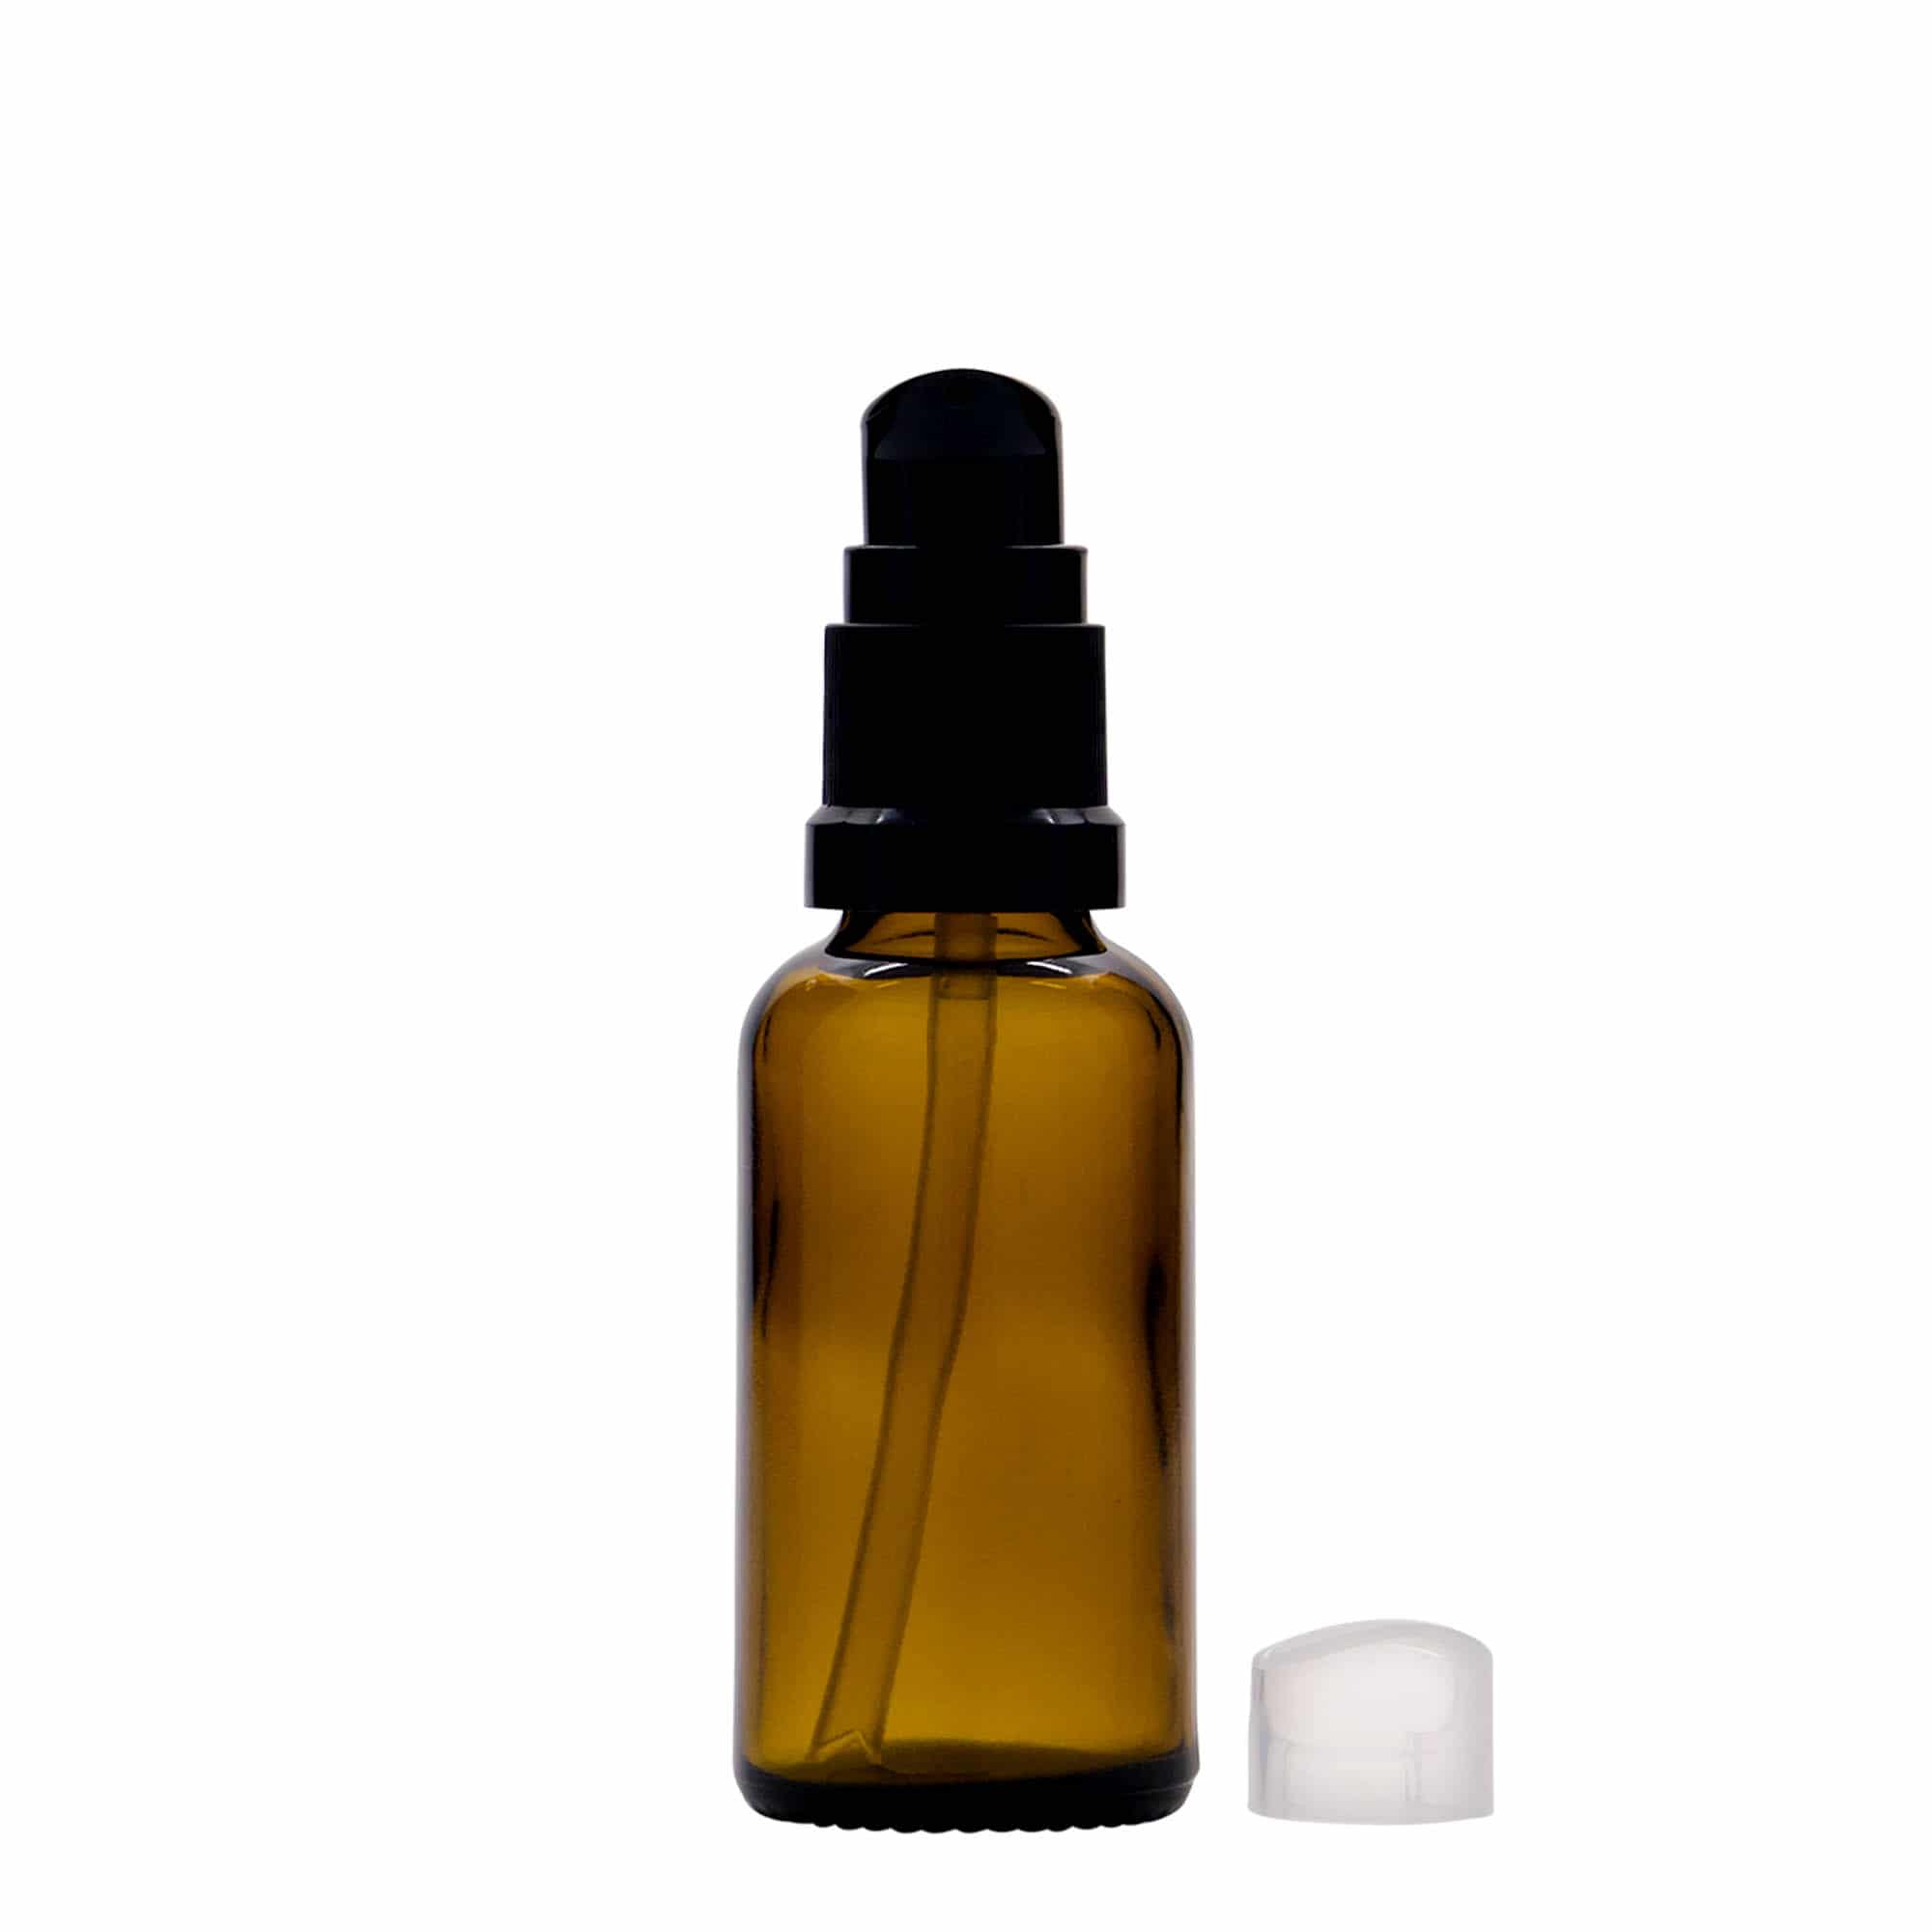 30 ml Medizinflasche mit Lotionspumpe, Glas, braun, Mündung: DIN 18